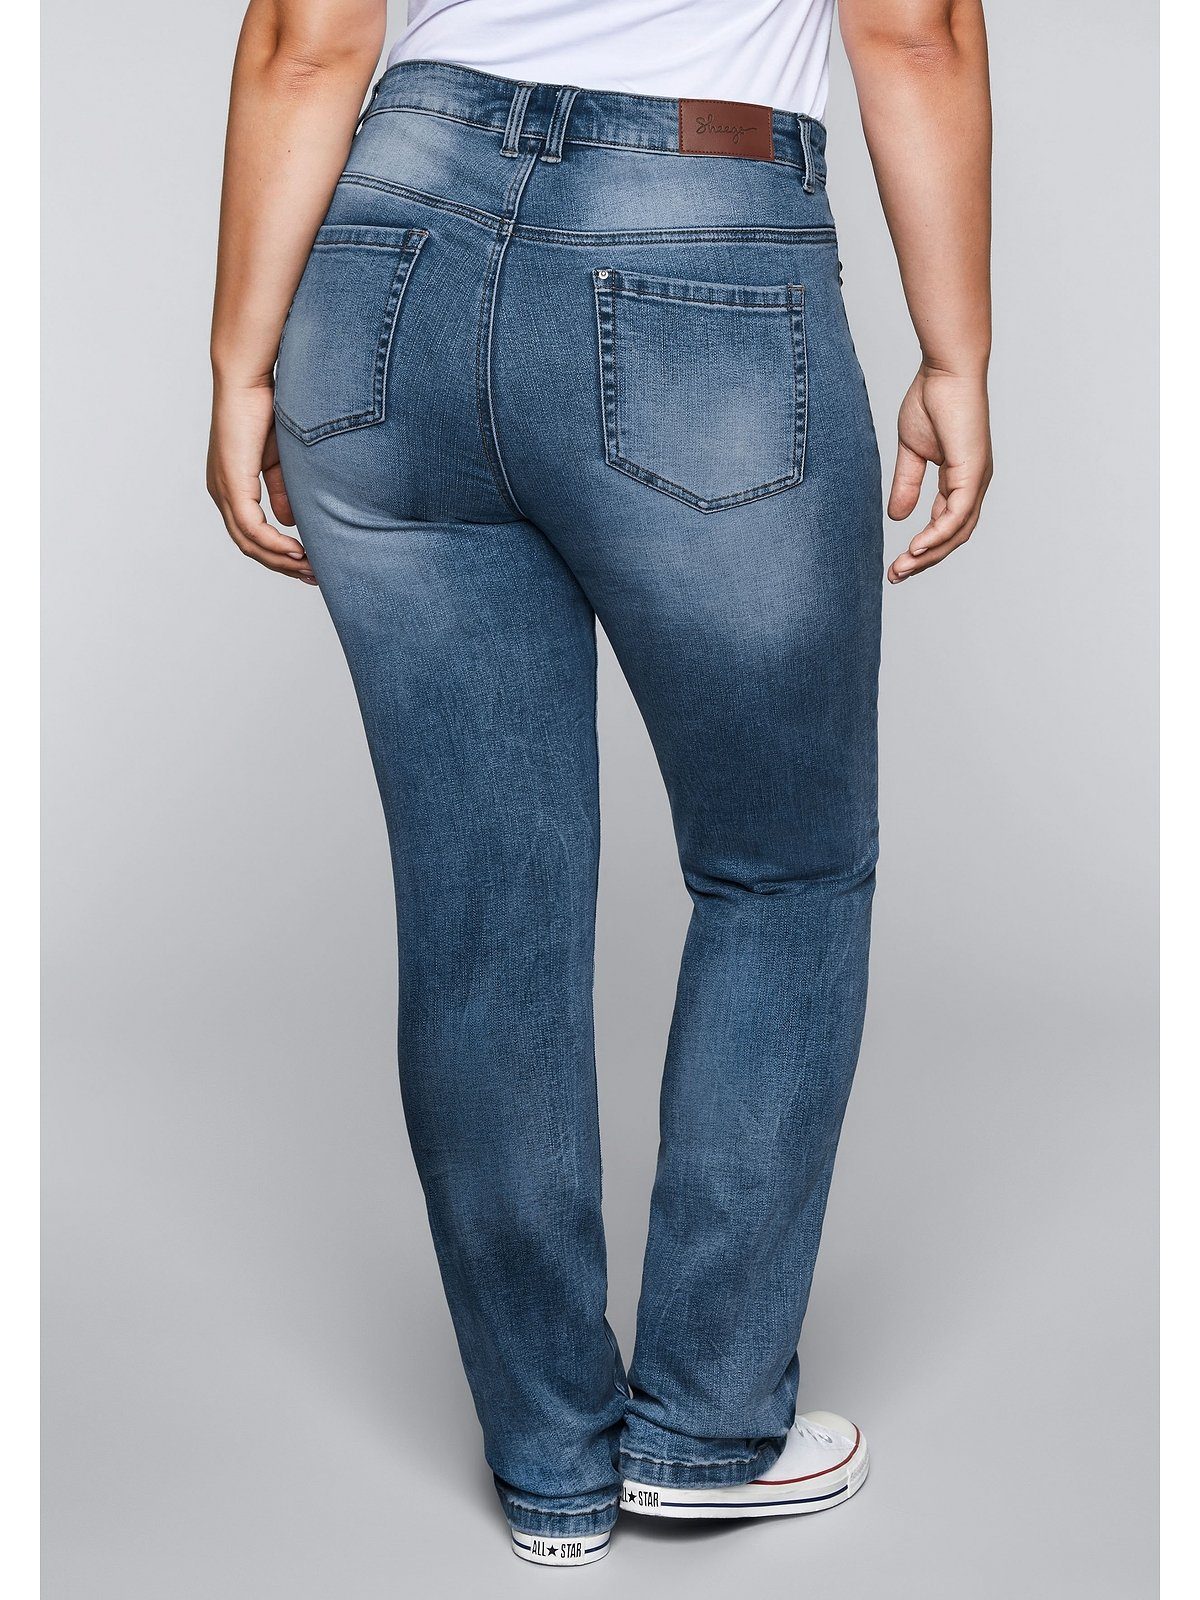 Sheego Gerade Jeans mit Große blue Größen Bodyforming-Effekt Denim